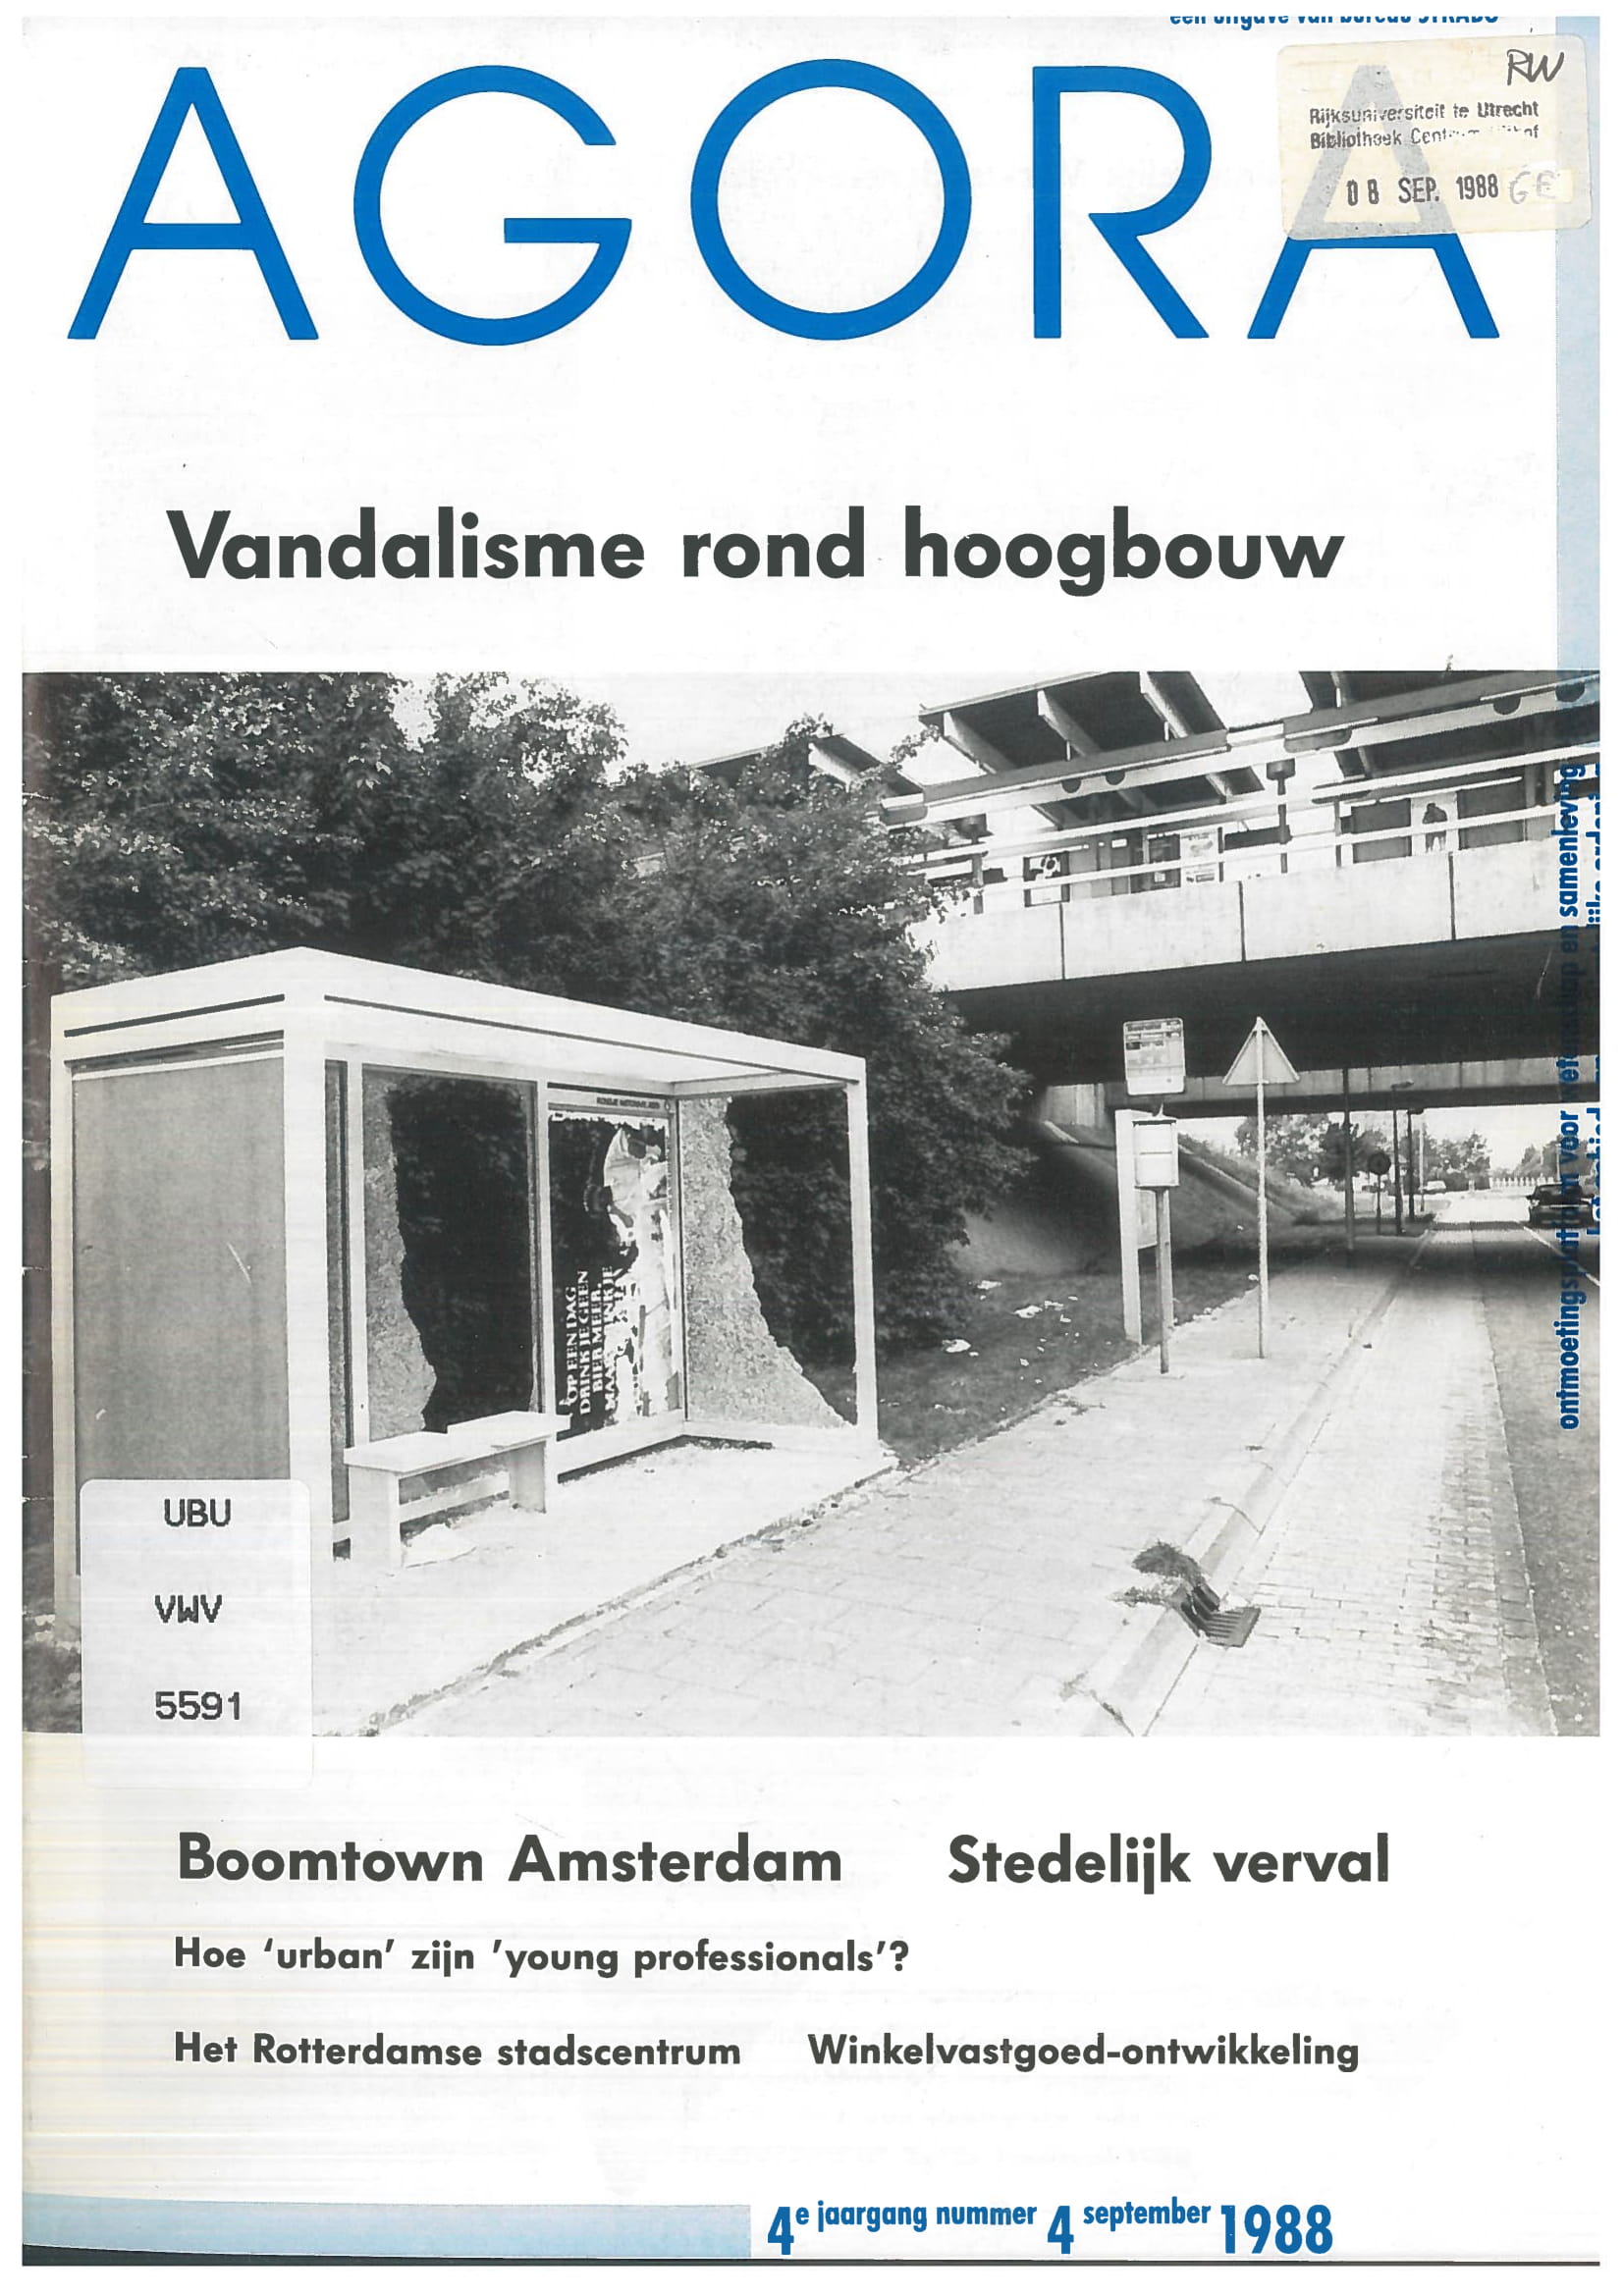 Vandalisme rond hoogbouw is aan te pakken: De theorie getoetst in Middelburg